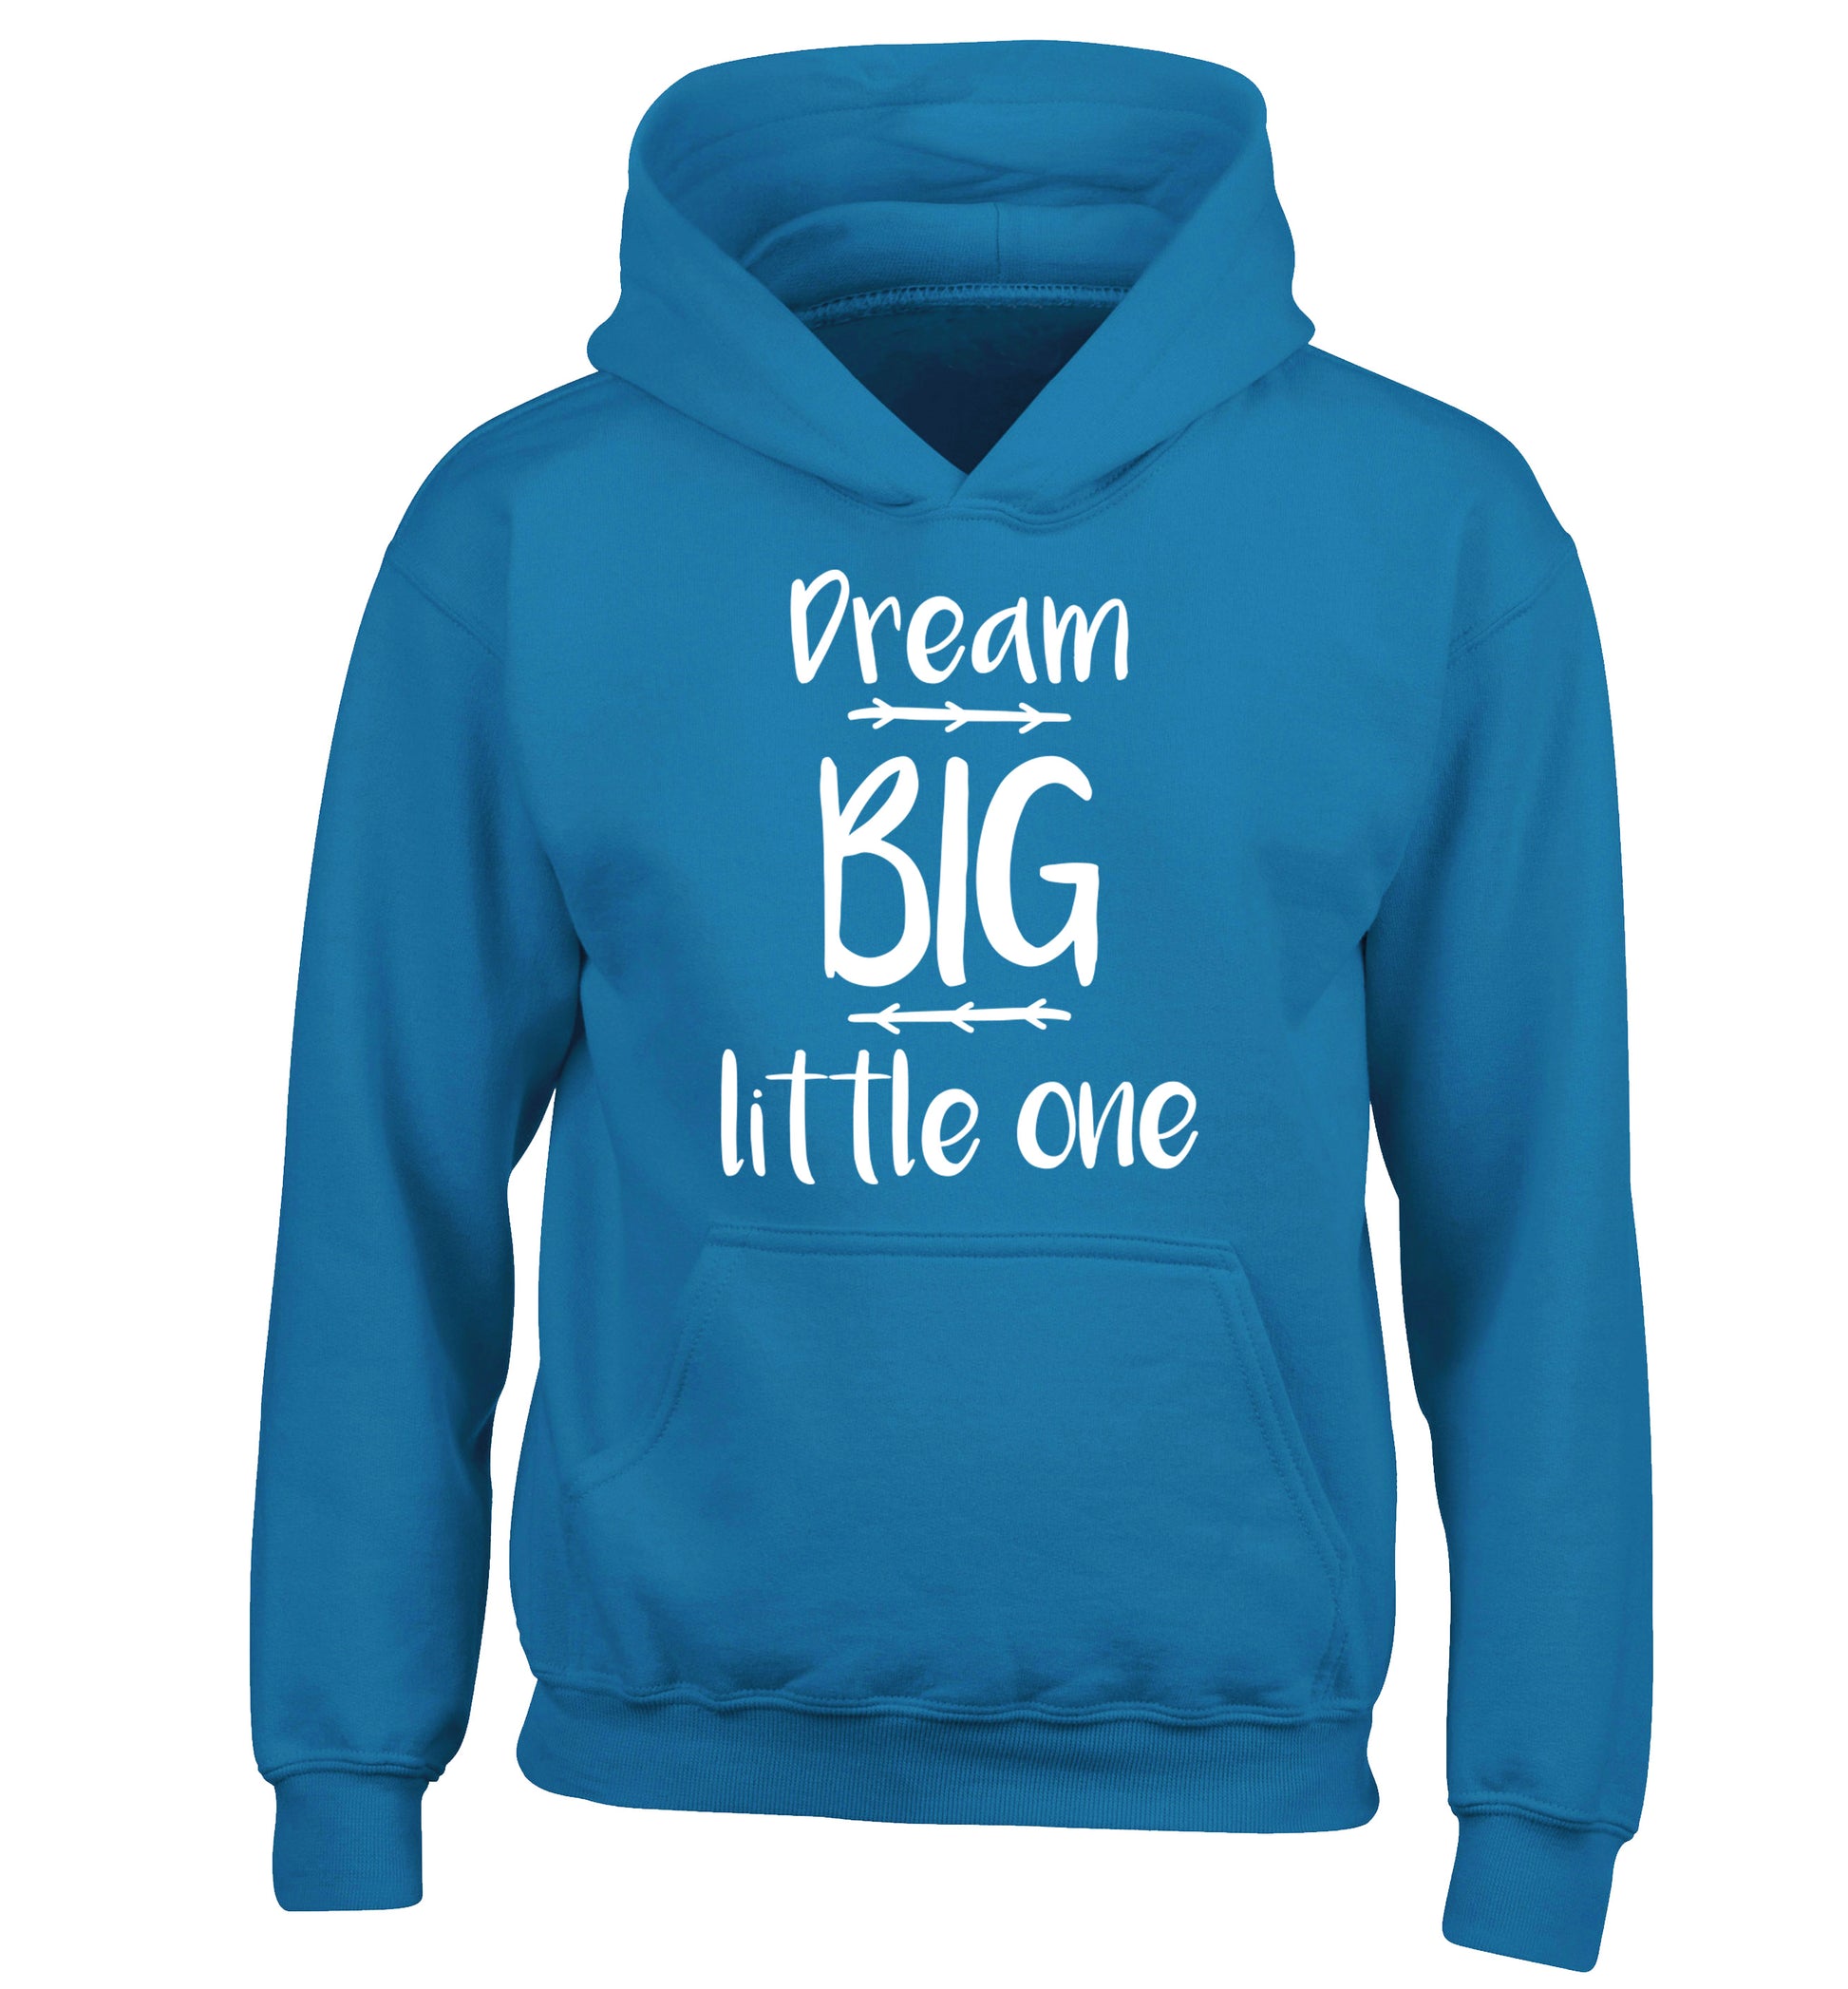 Dream big little one children's blue hoodie 12-14 Years